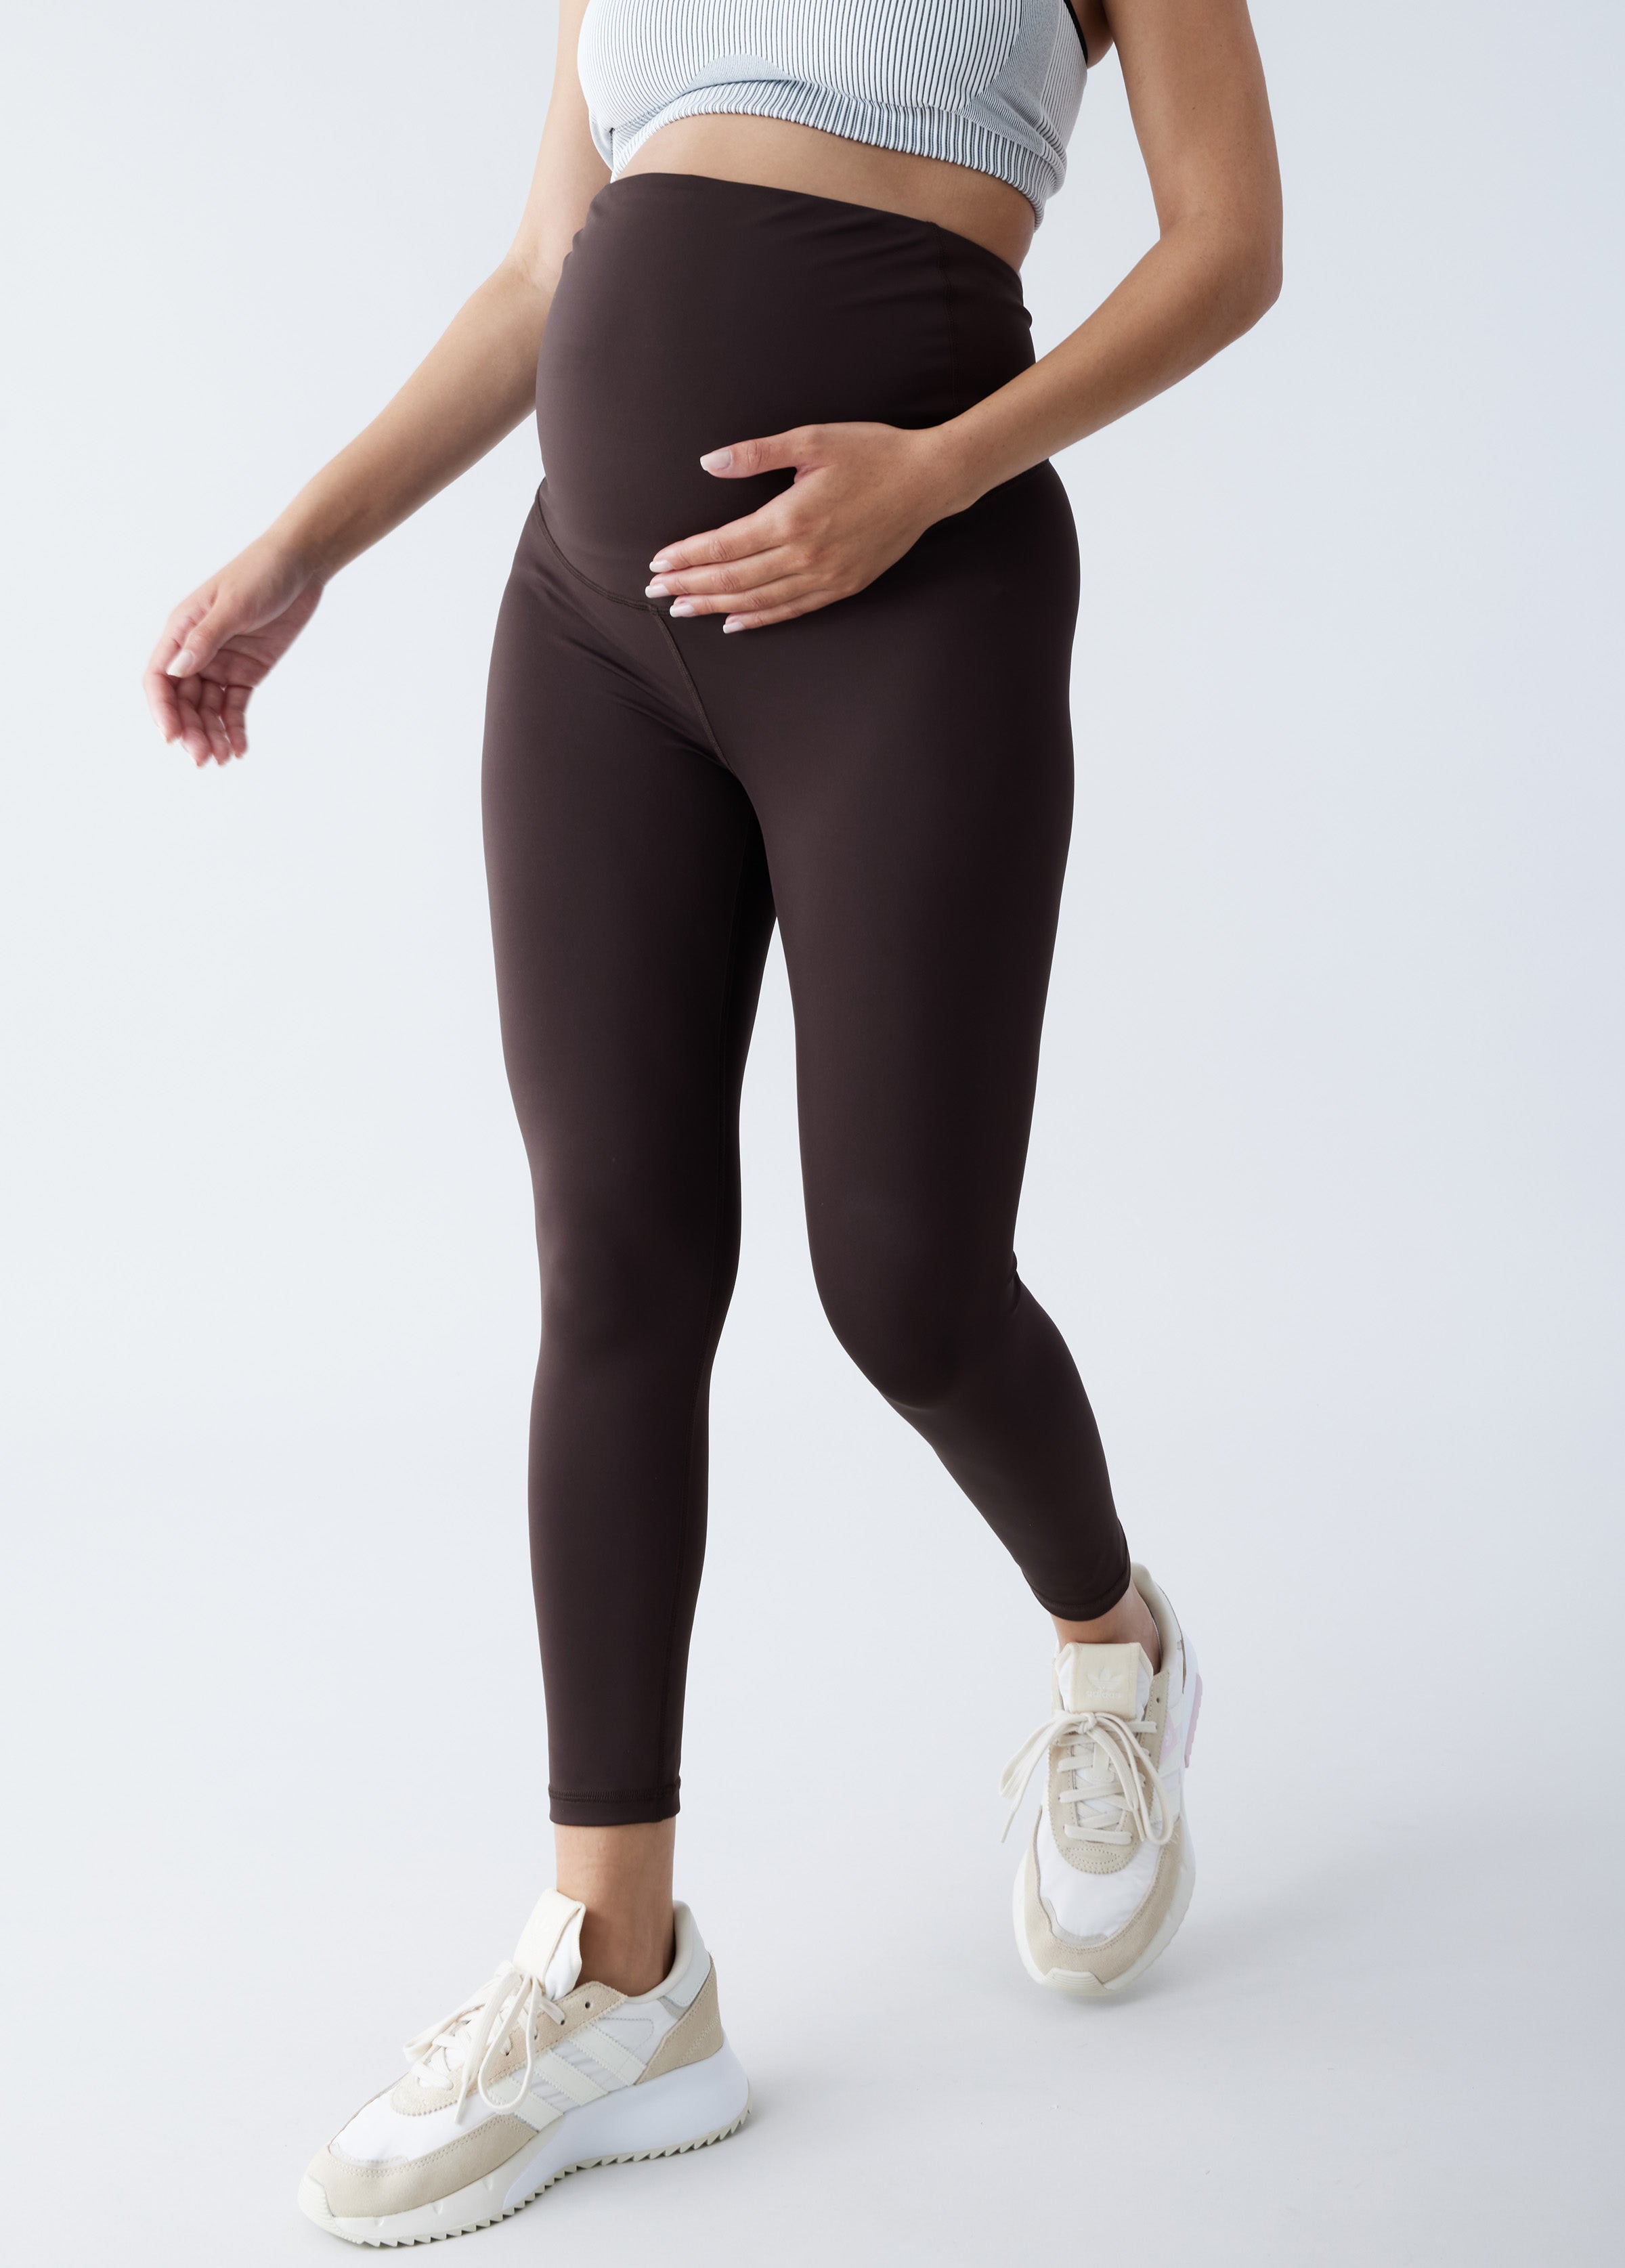 Ingrid & Isabel Basics 7/8 Active Postpartum Legging, Compression